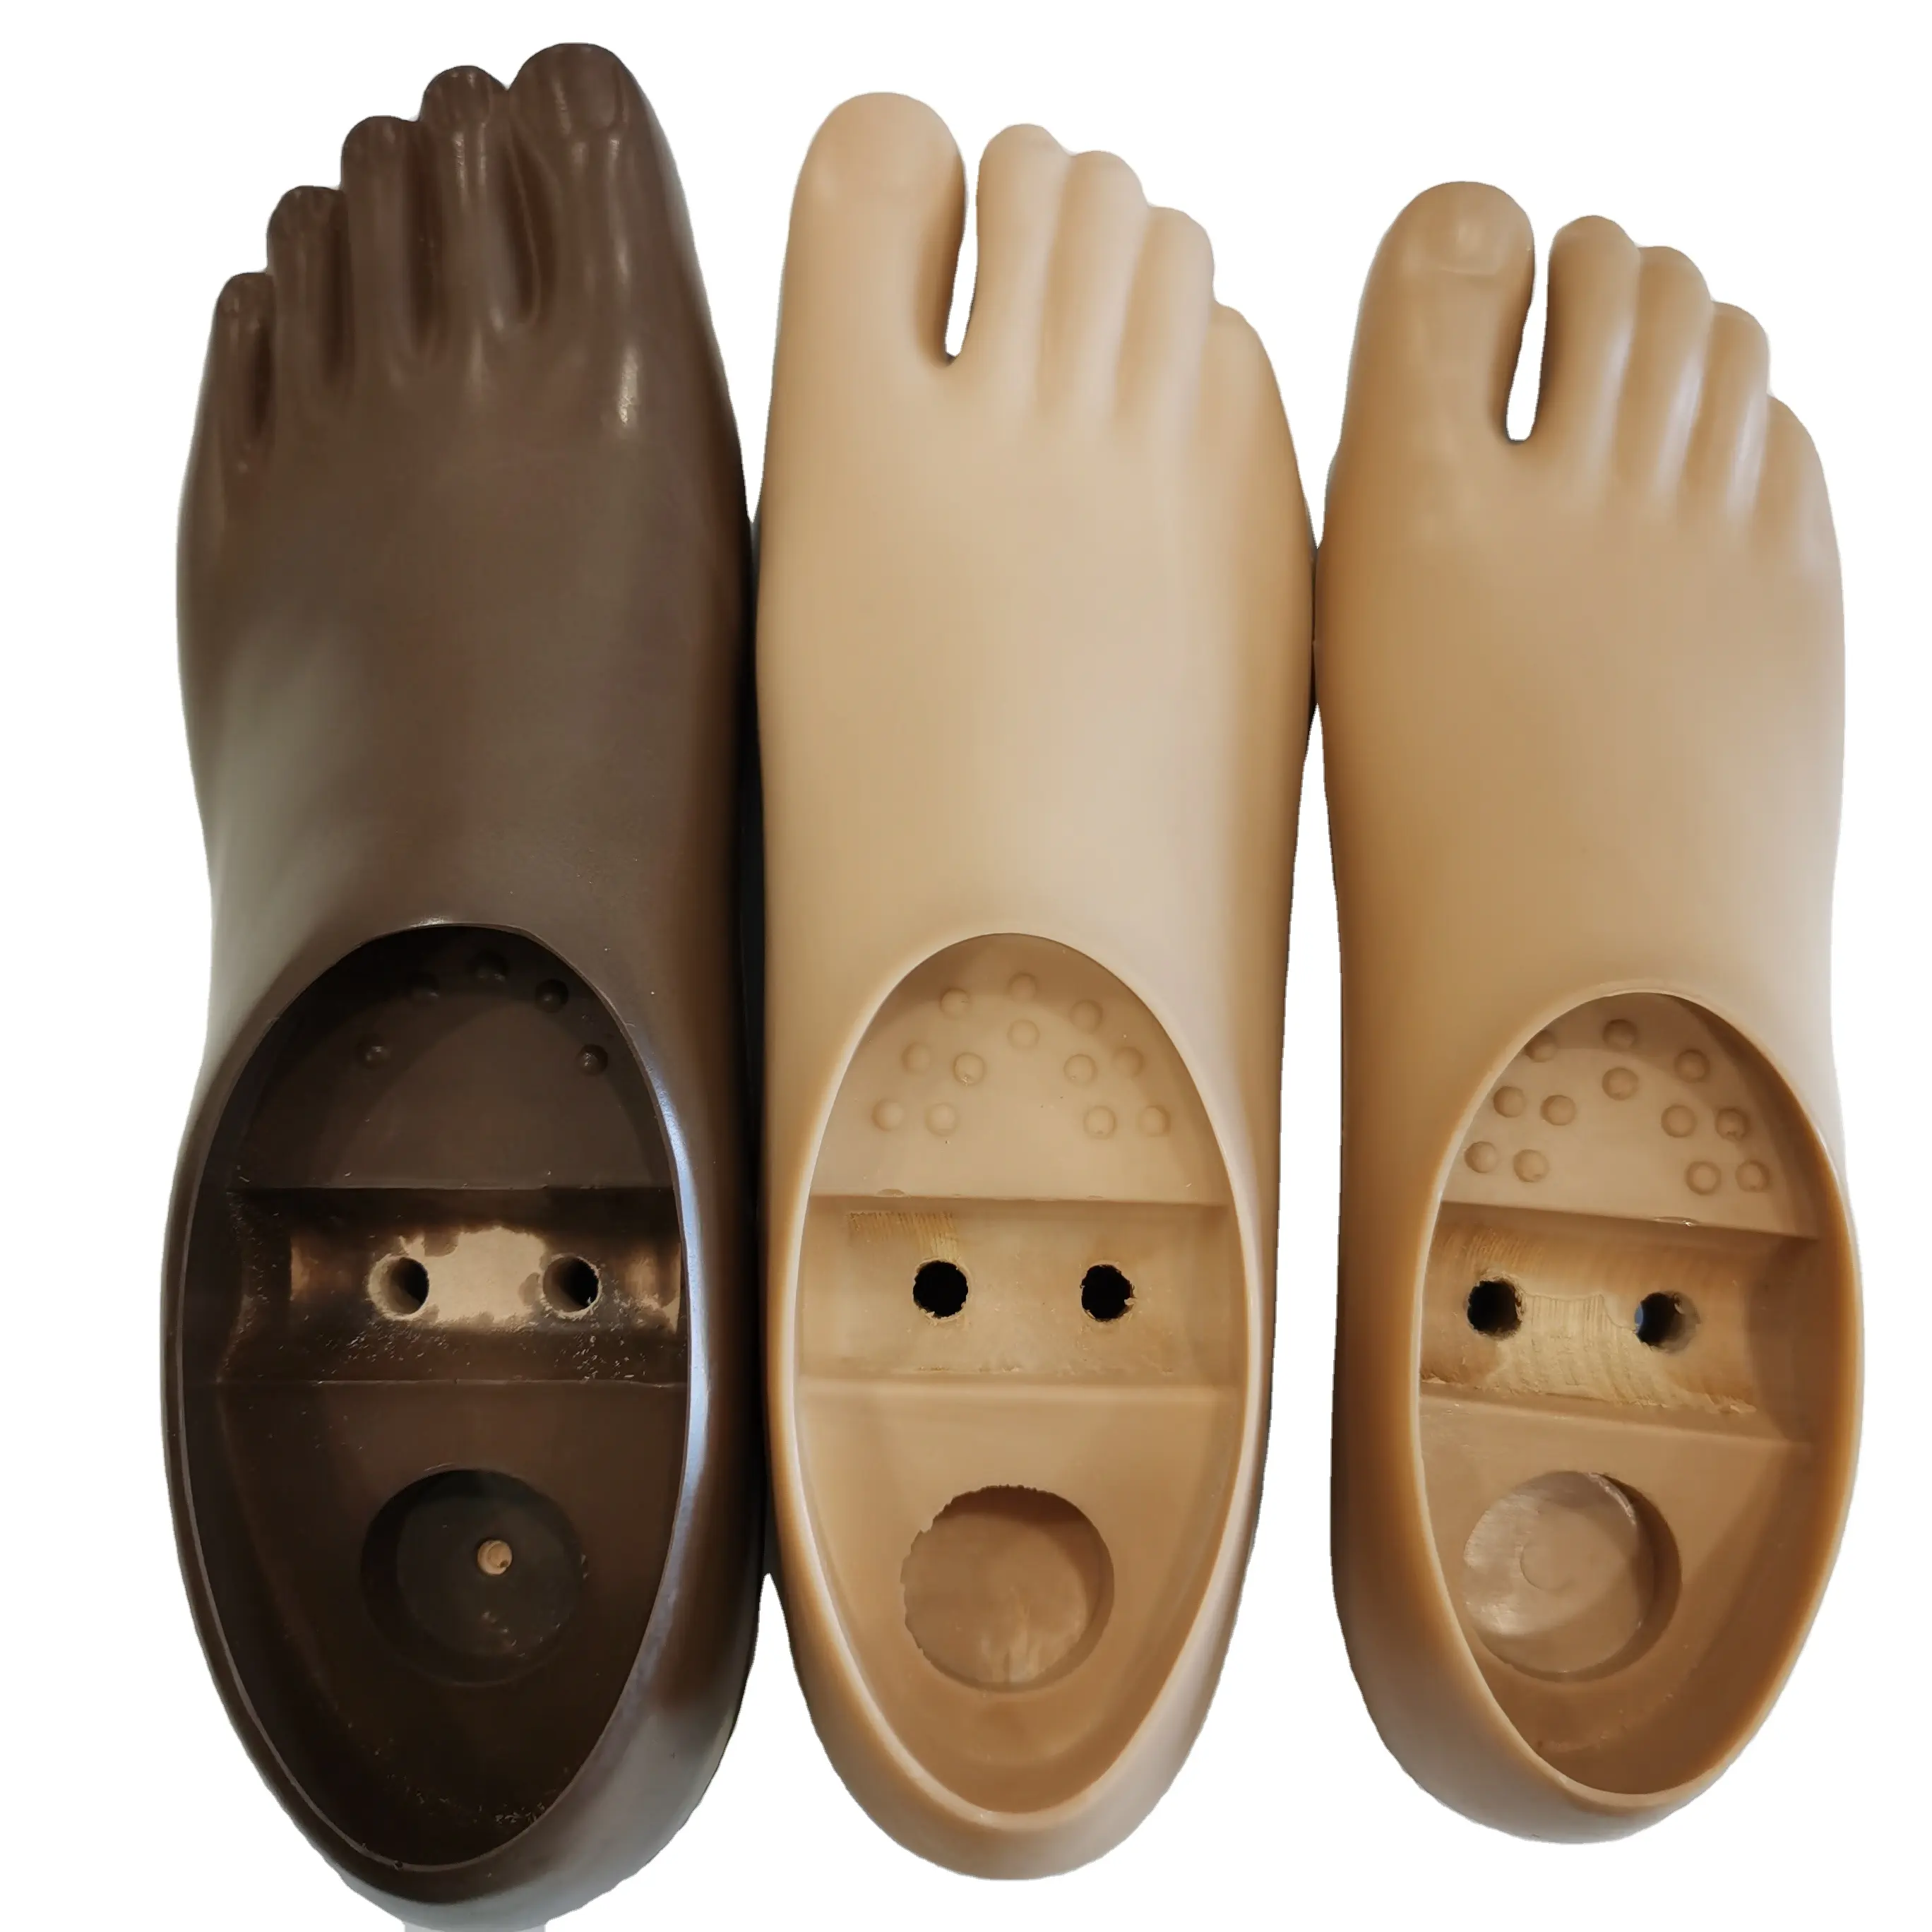 Arti artificiali piede in poliuretano doppio foro piede per protesi gamba